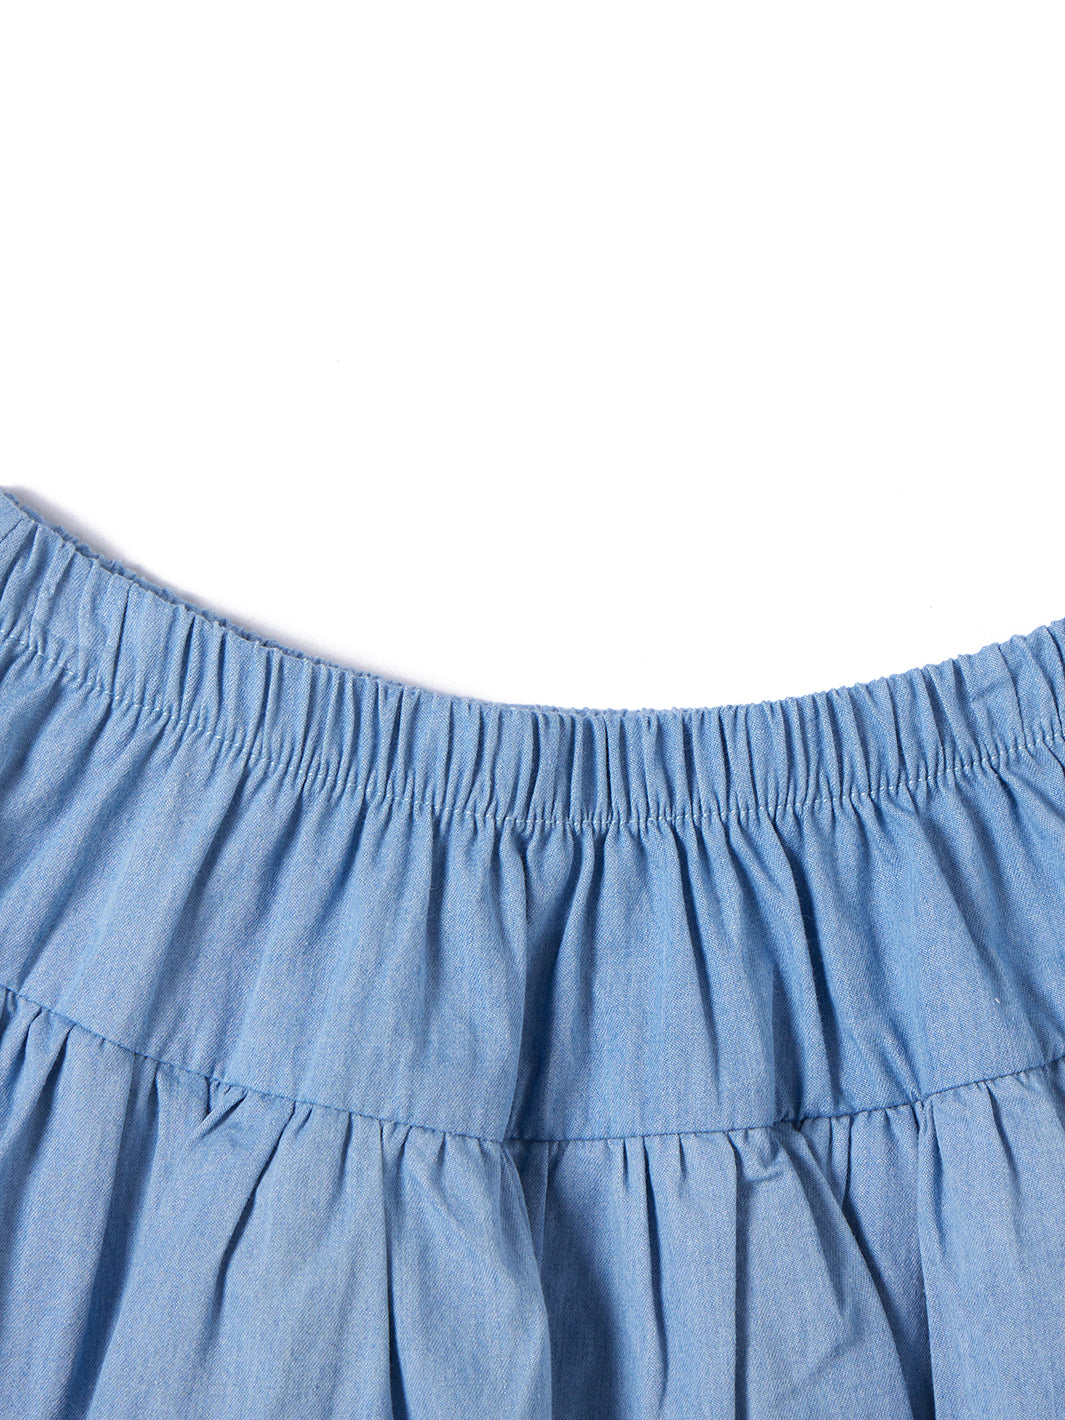 Ruffle Overlayer Skirt